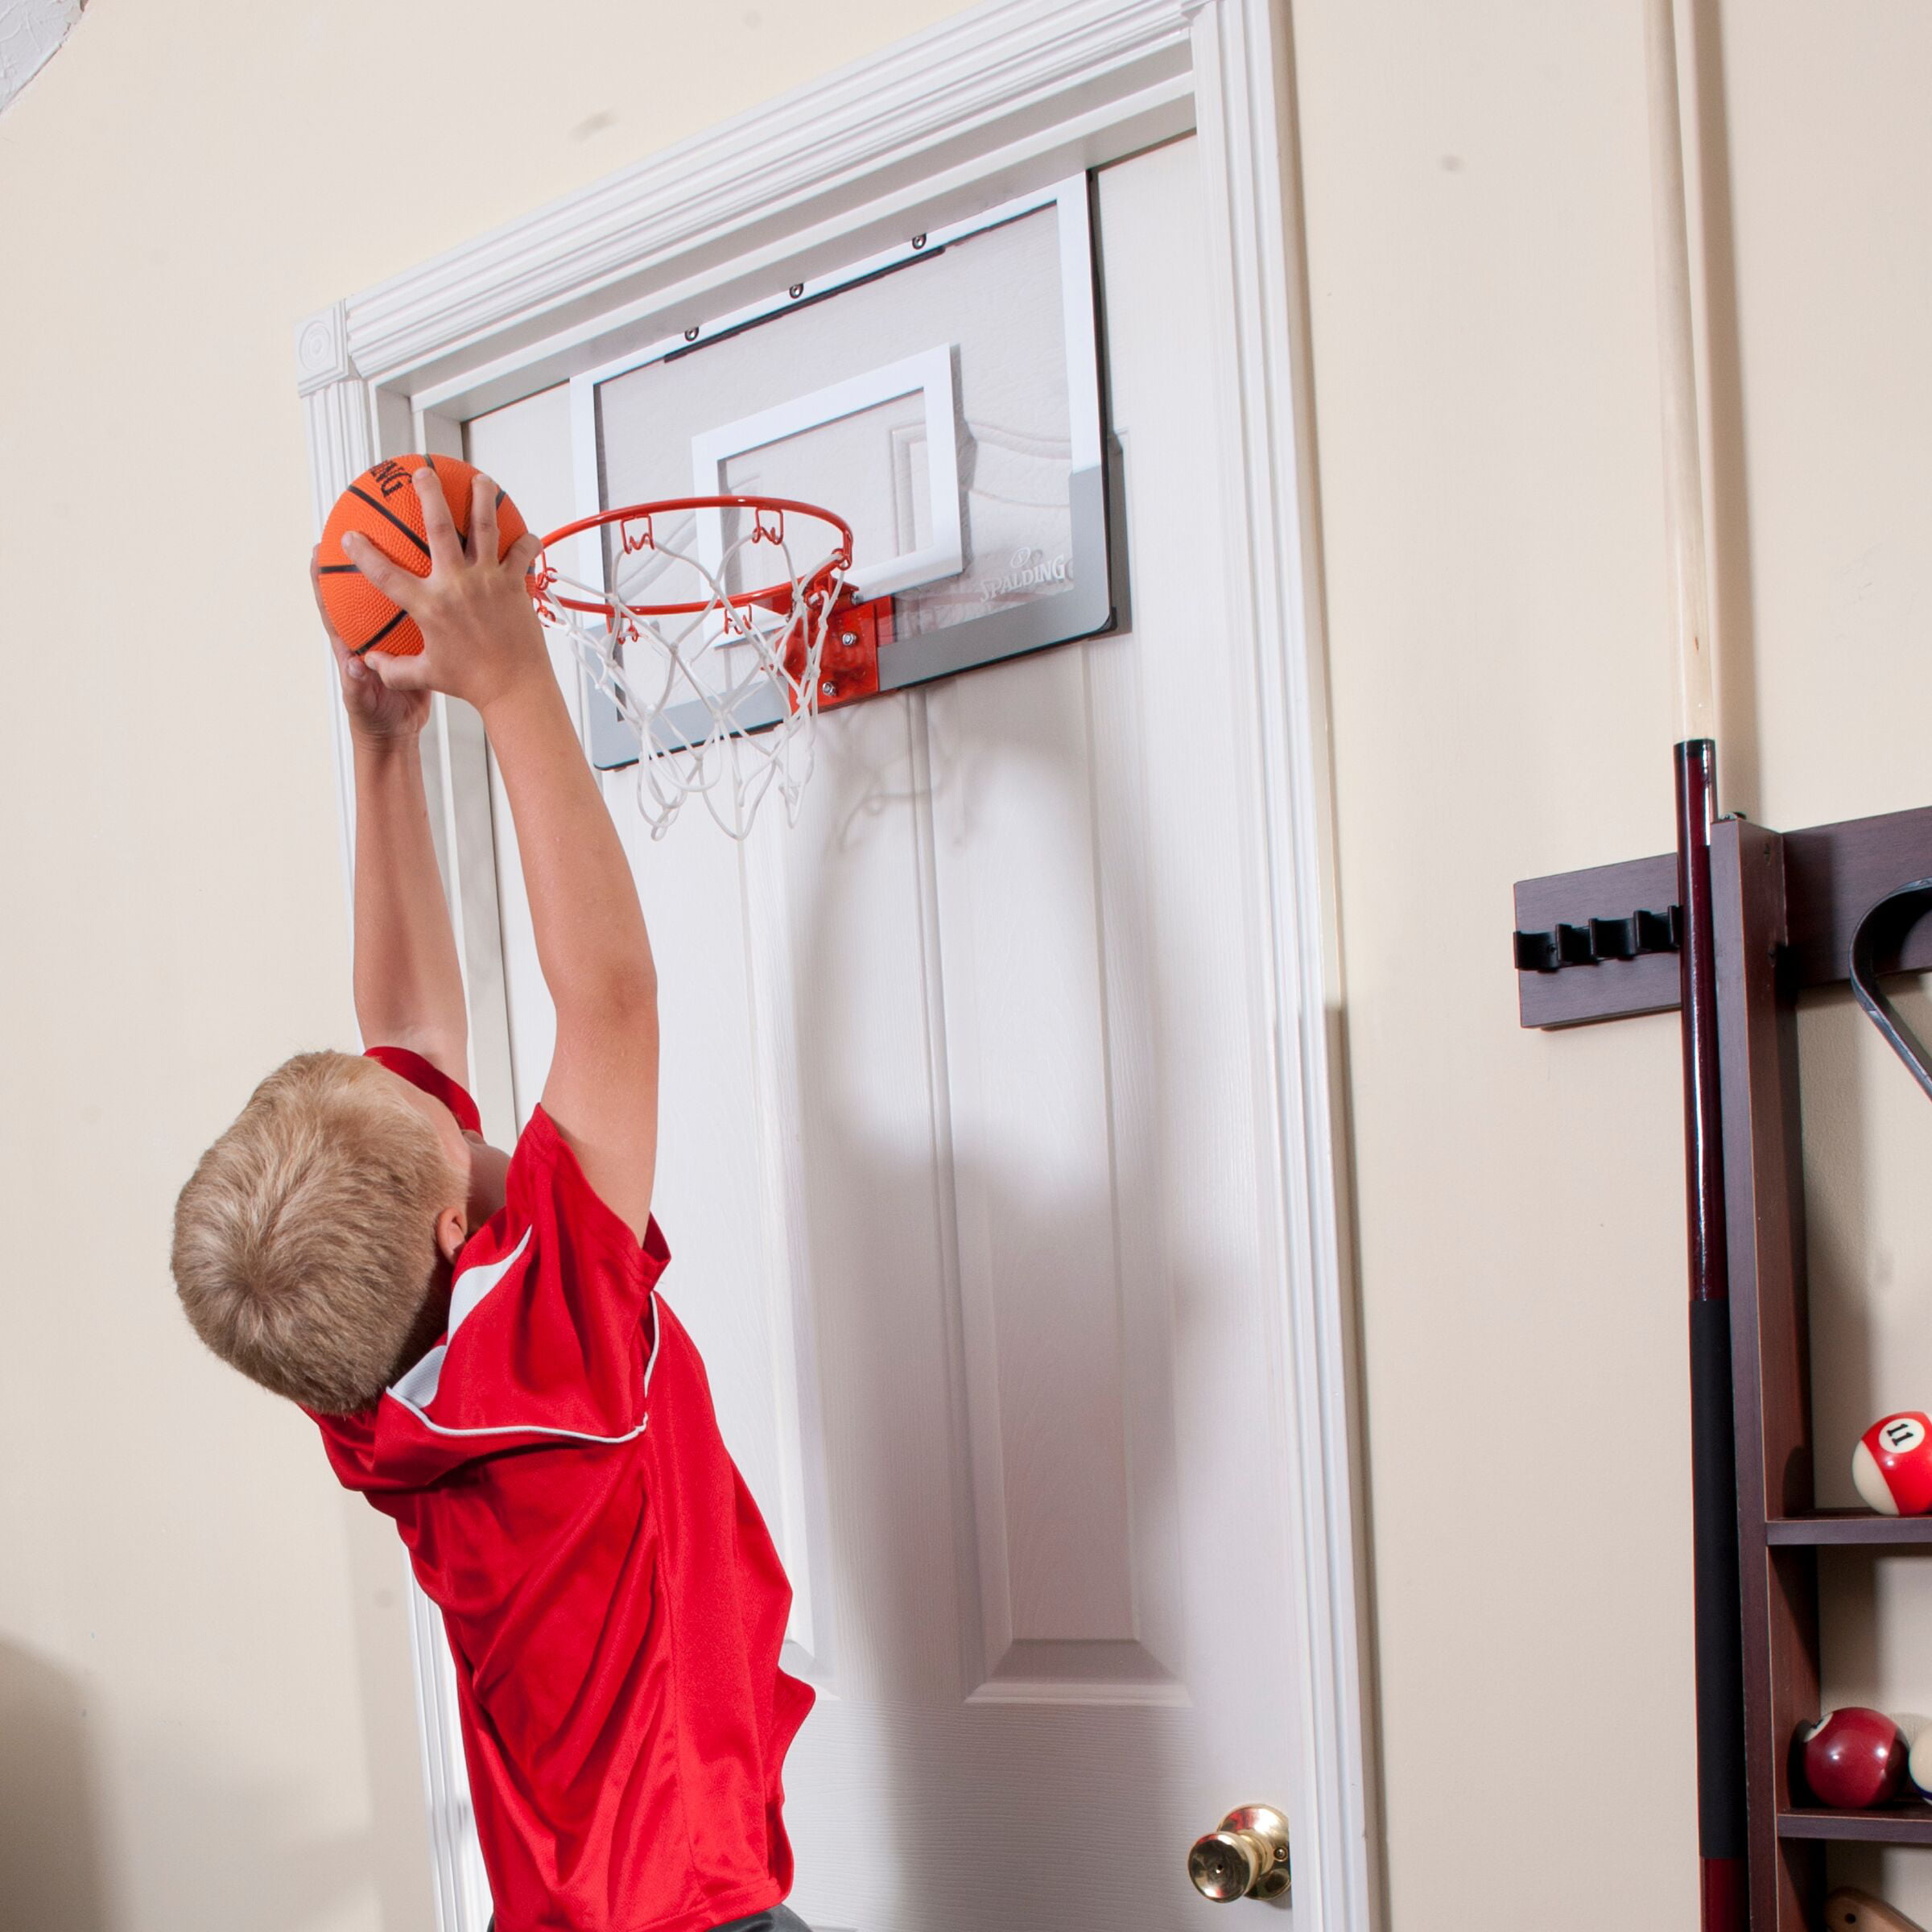 Spalding Slam Jam® Over-the-Door Basketball Hoop